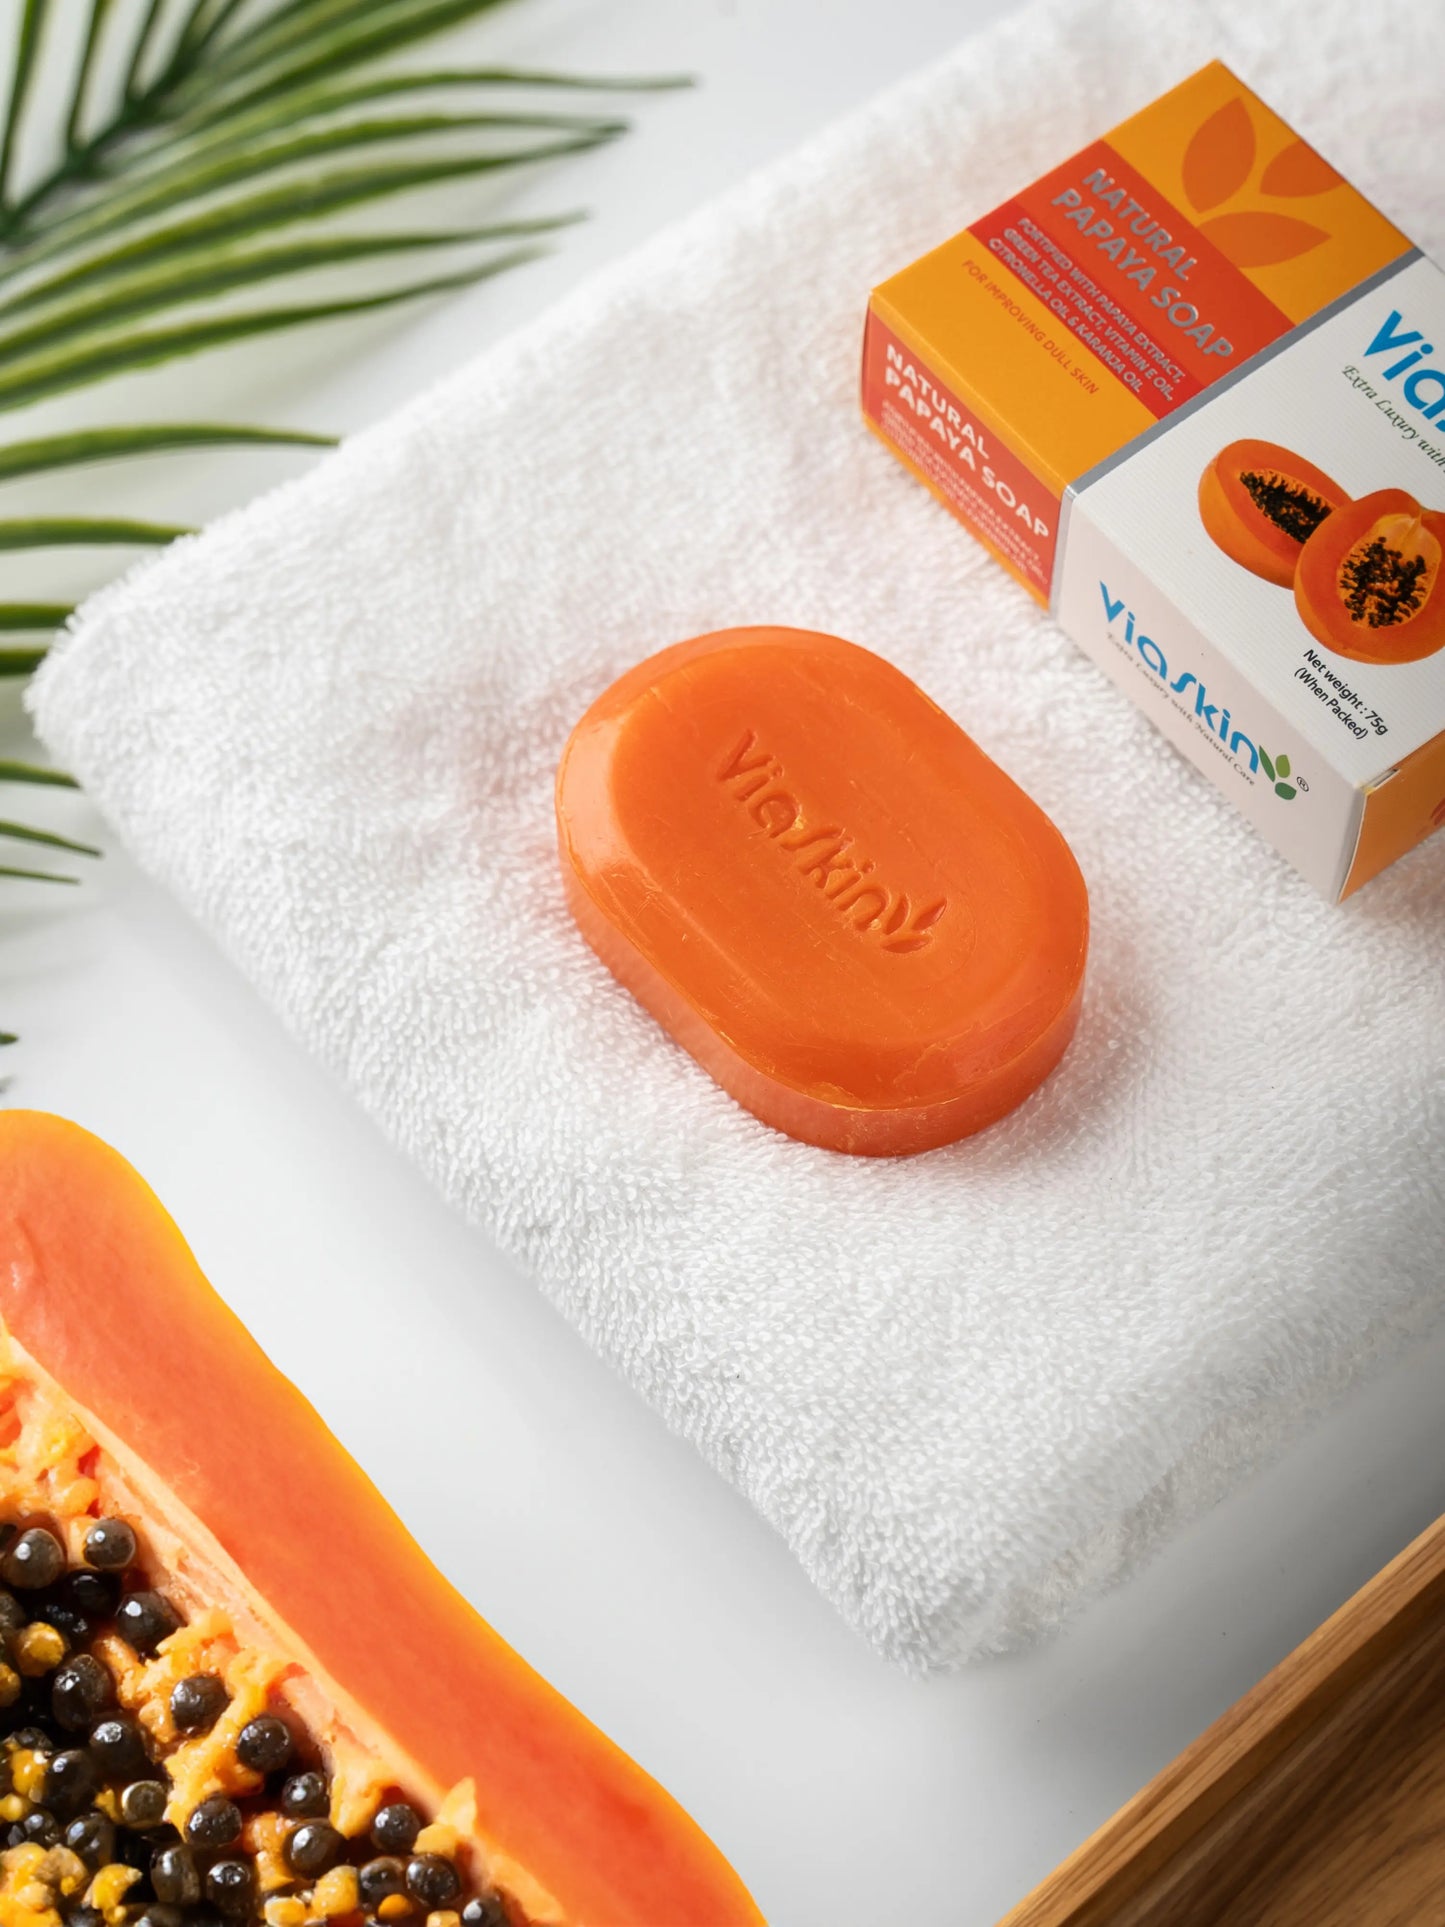 Viaskin Natural Papaya Soap. ( Pack of 4 ) , 75 g / Soap